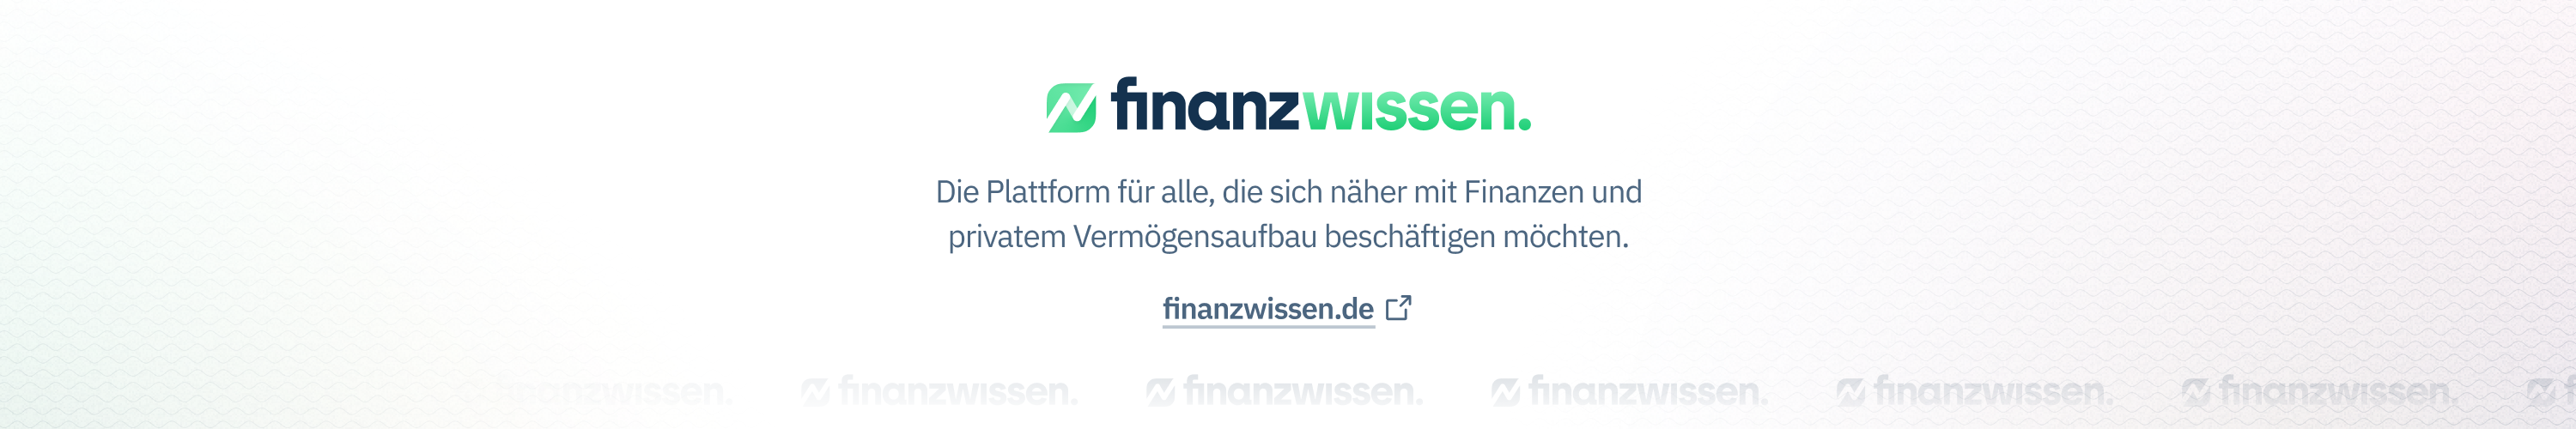 Finanzwissen.de / startup from Flensburg / Background